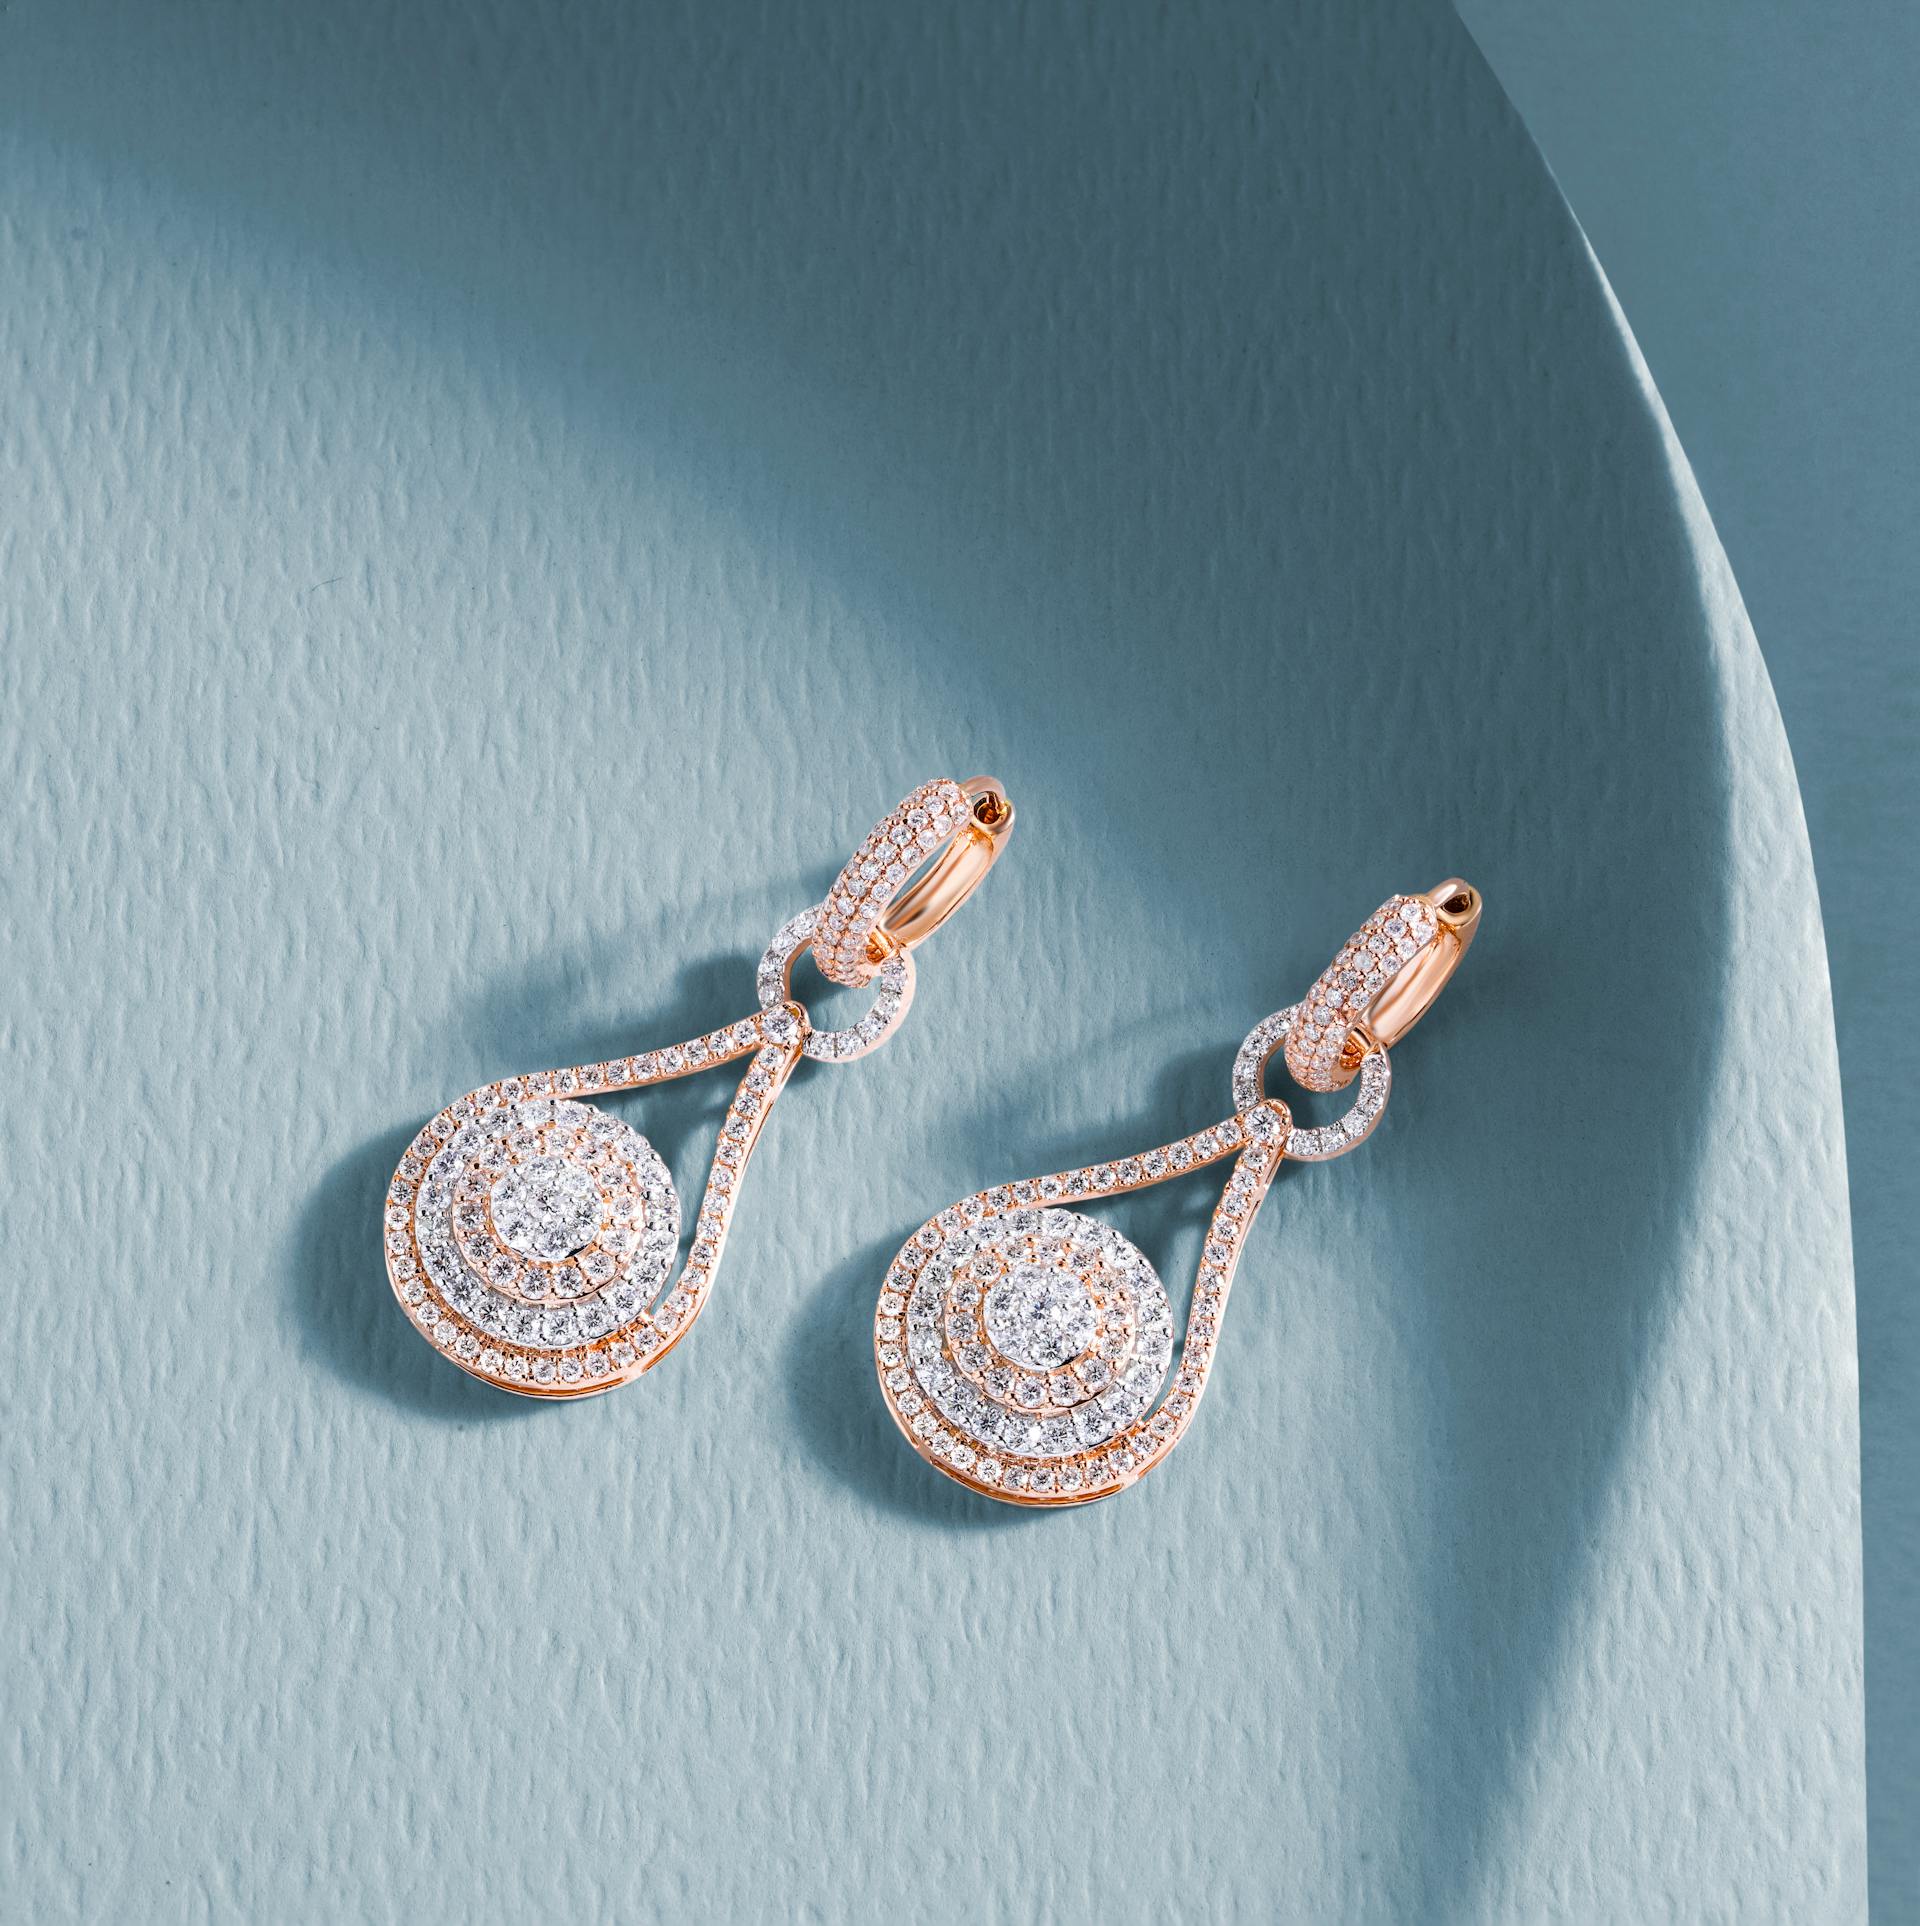 A pair of diamond earrings | Source: Pexels